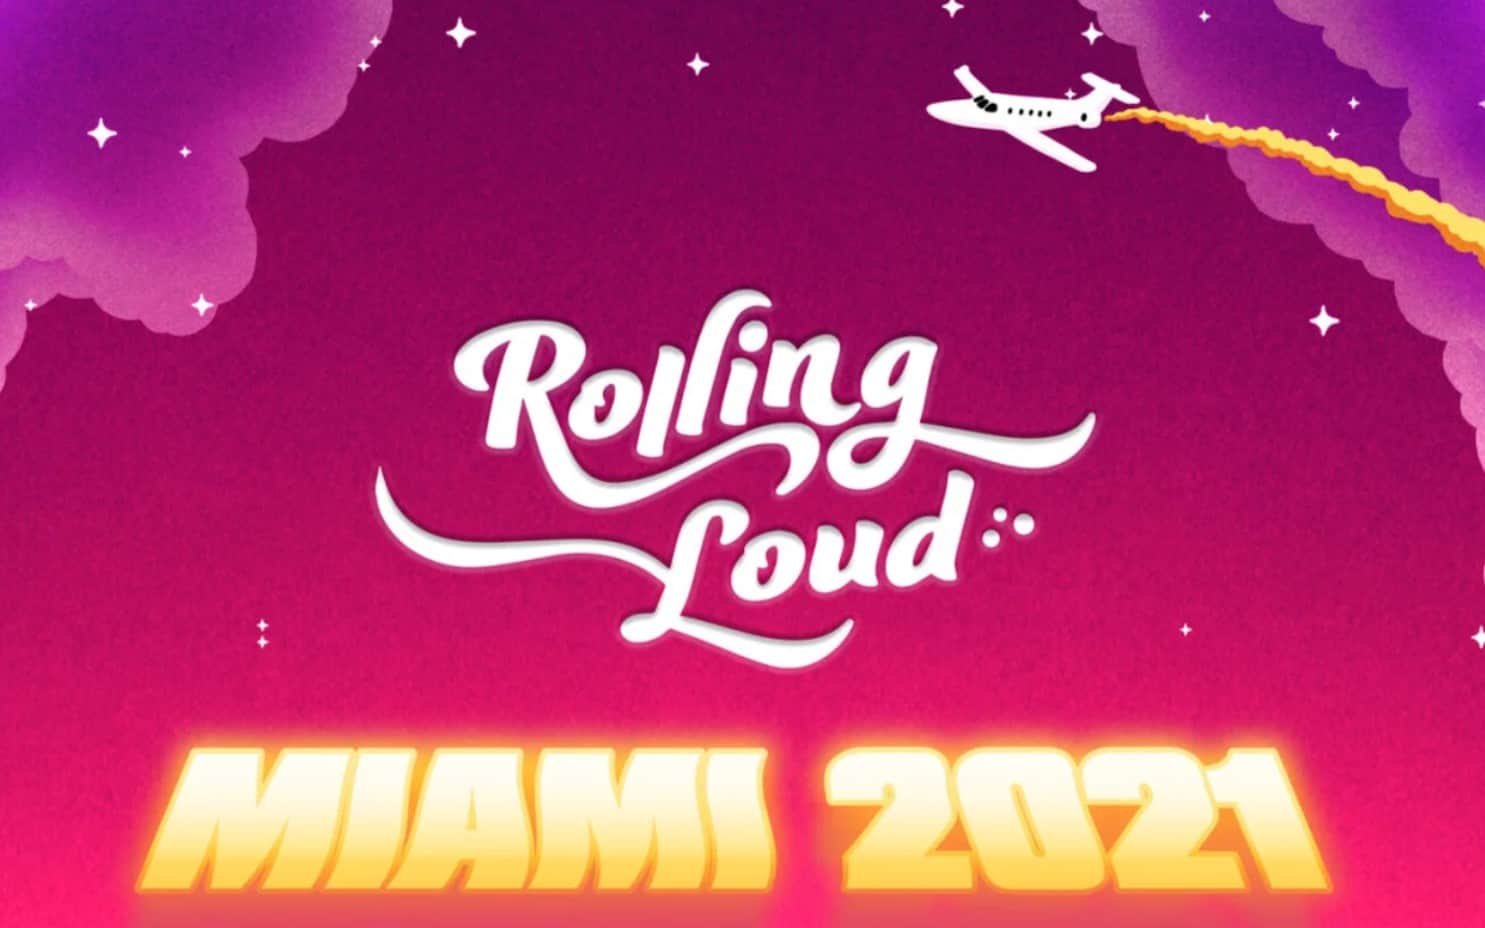 ASAP Rocky, Travis Scott, Post Malone To Headline Rolling Loud 2021